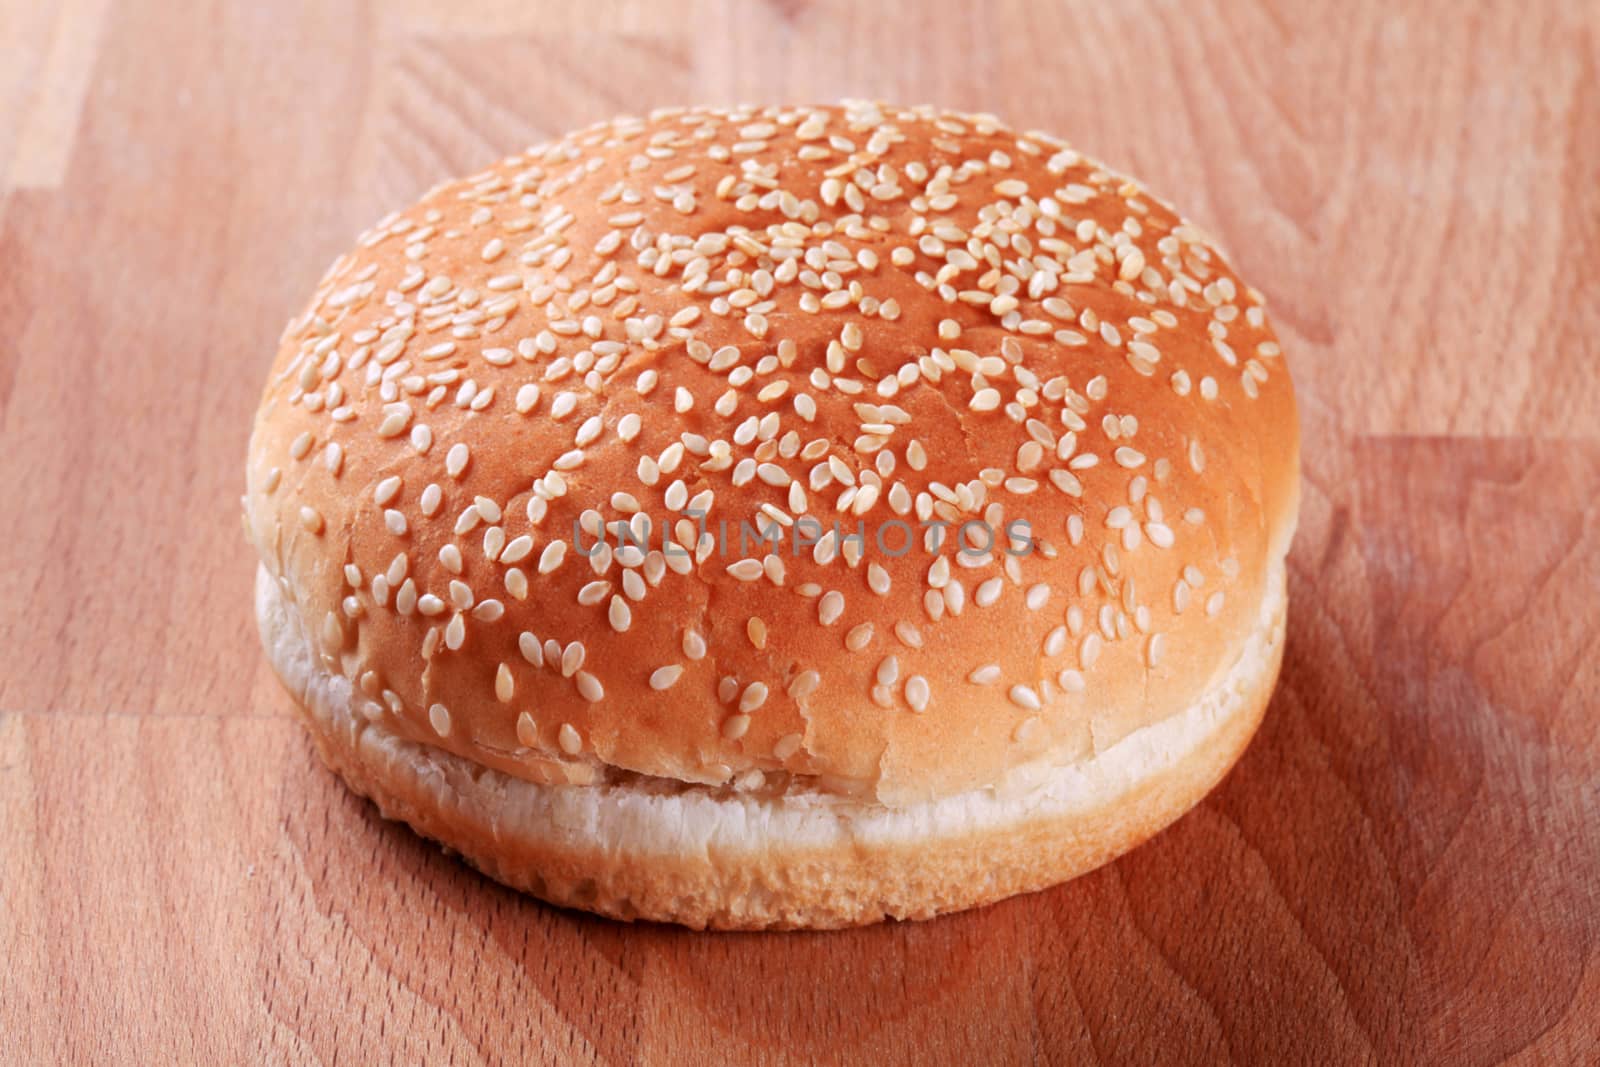 Hamburger bun with sesame seeds on top